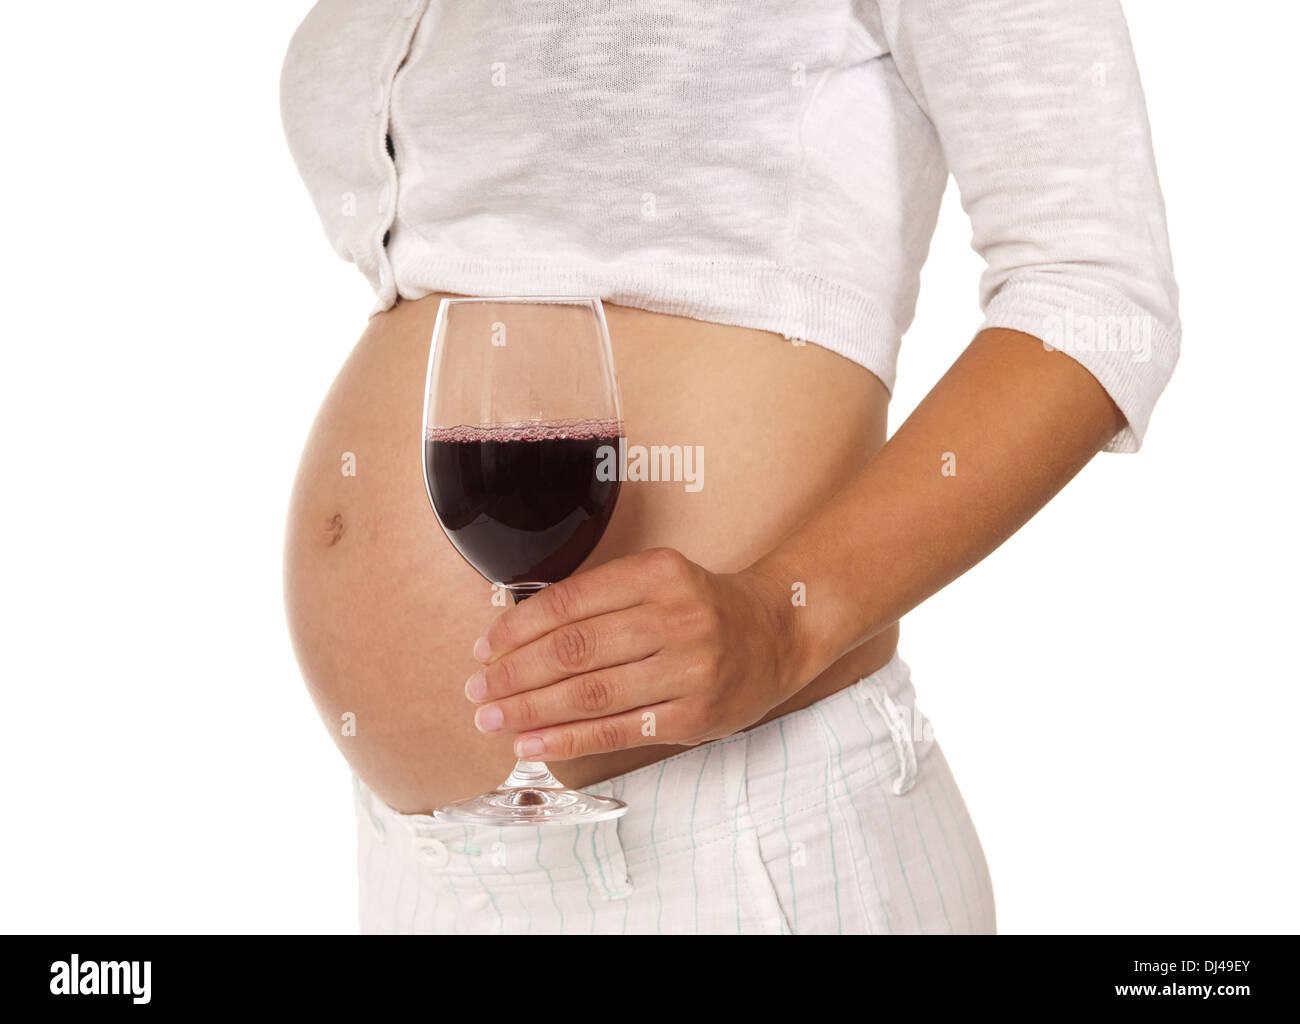 Пьющие беременные после. Алкоголь и беременность.